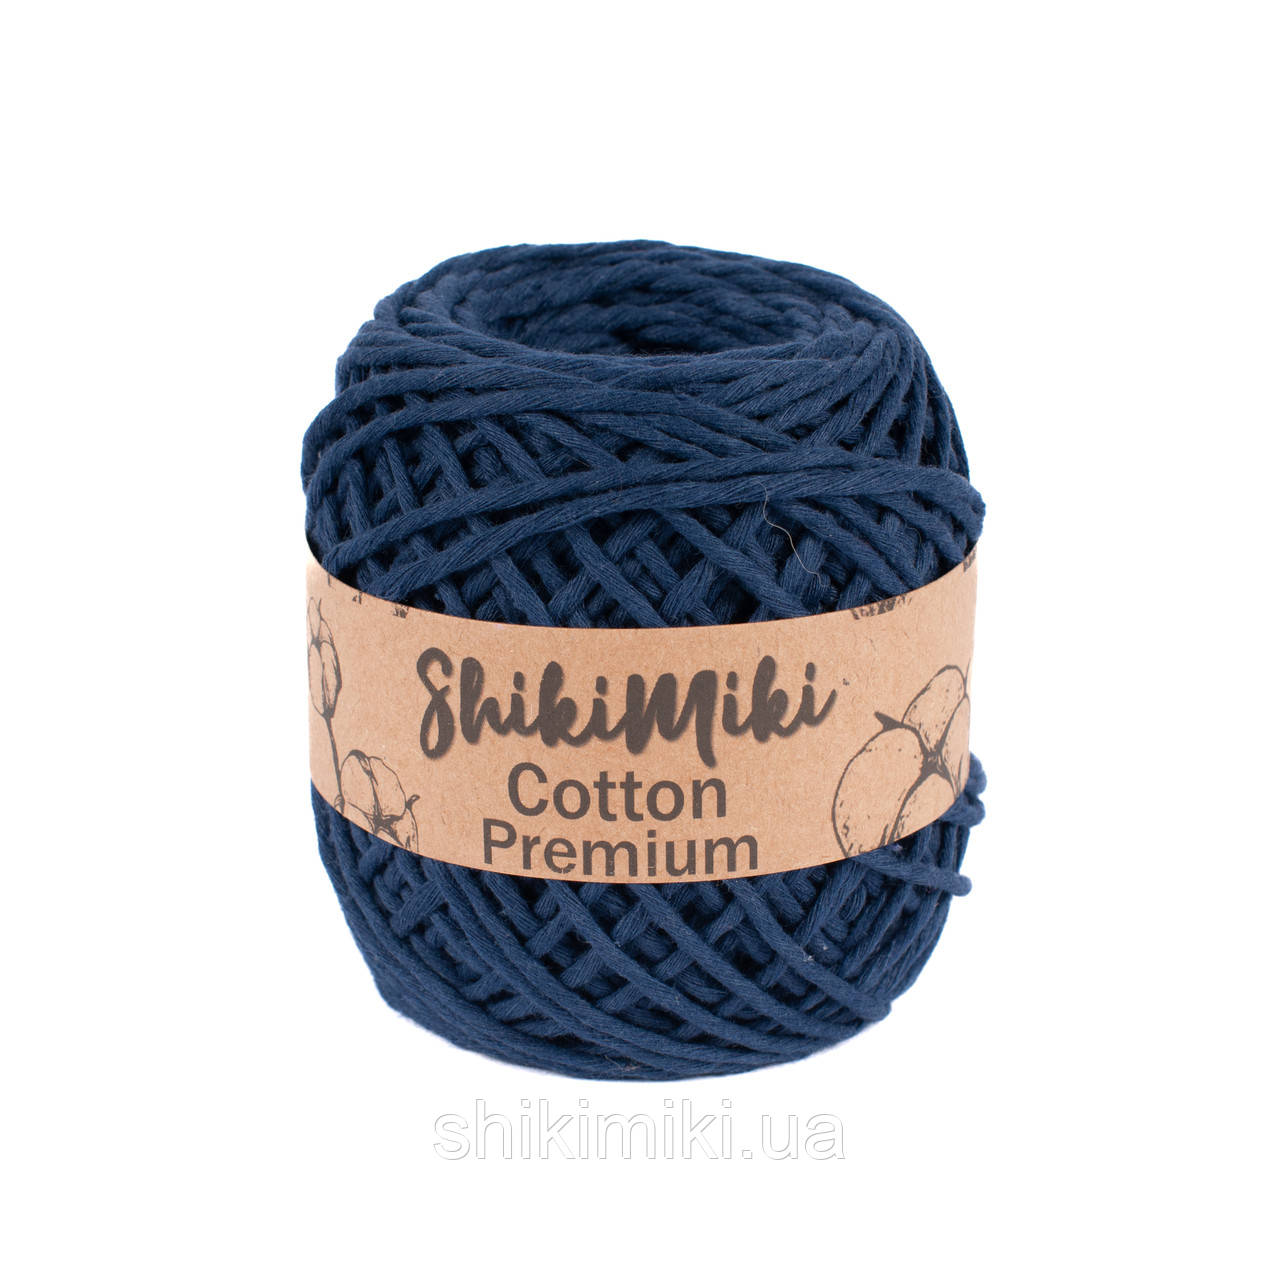 Еко шнур Shikimiki Cotton Premium 2 мм, колір Темно-синій